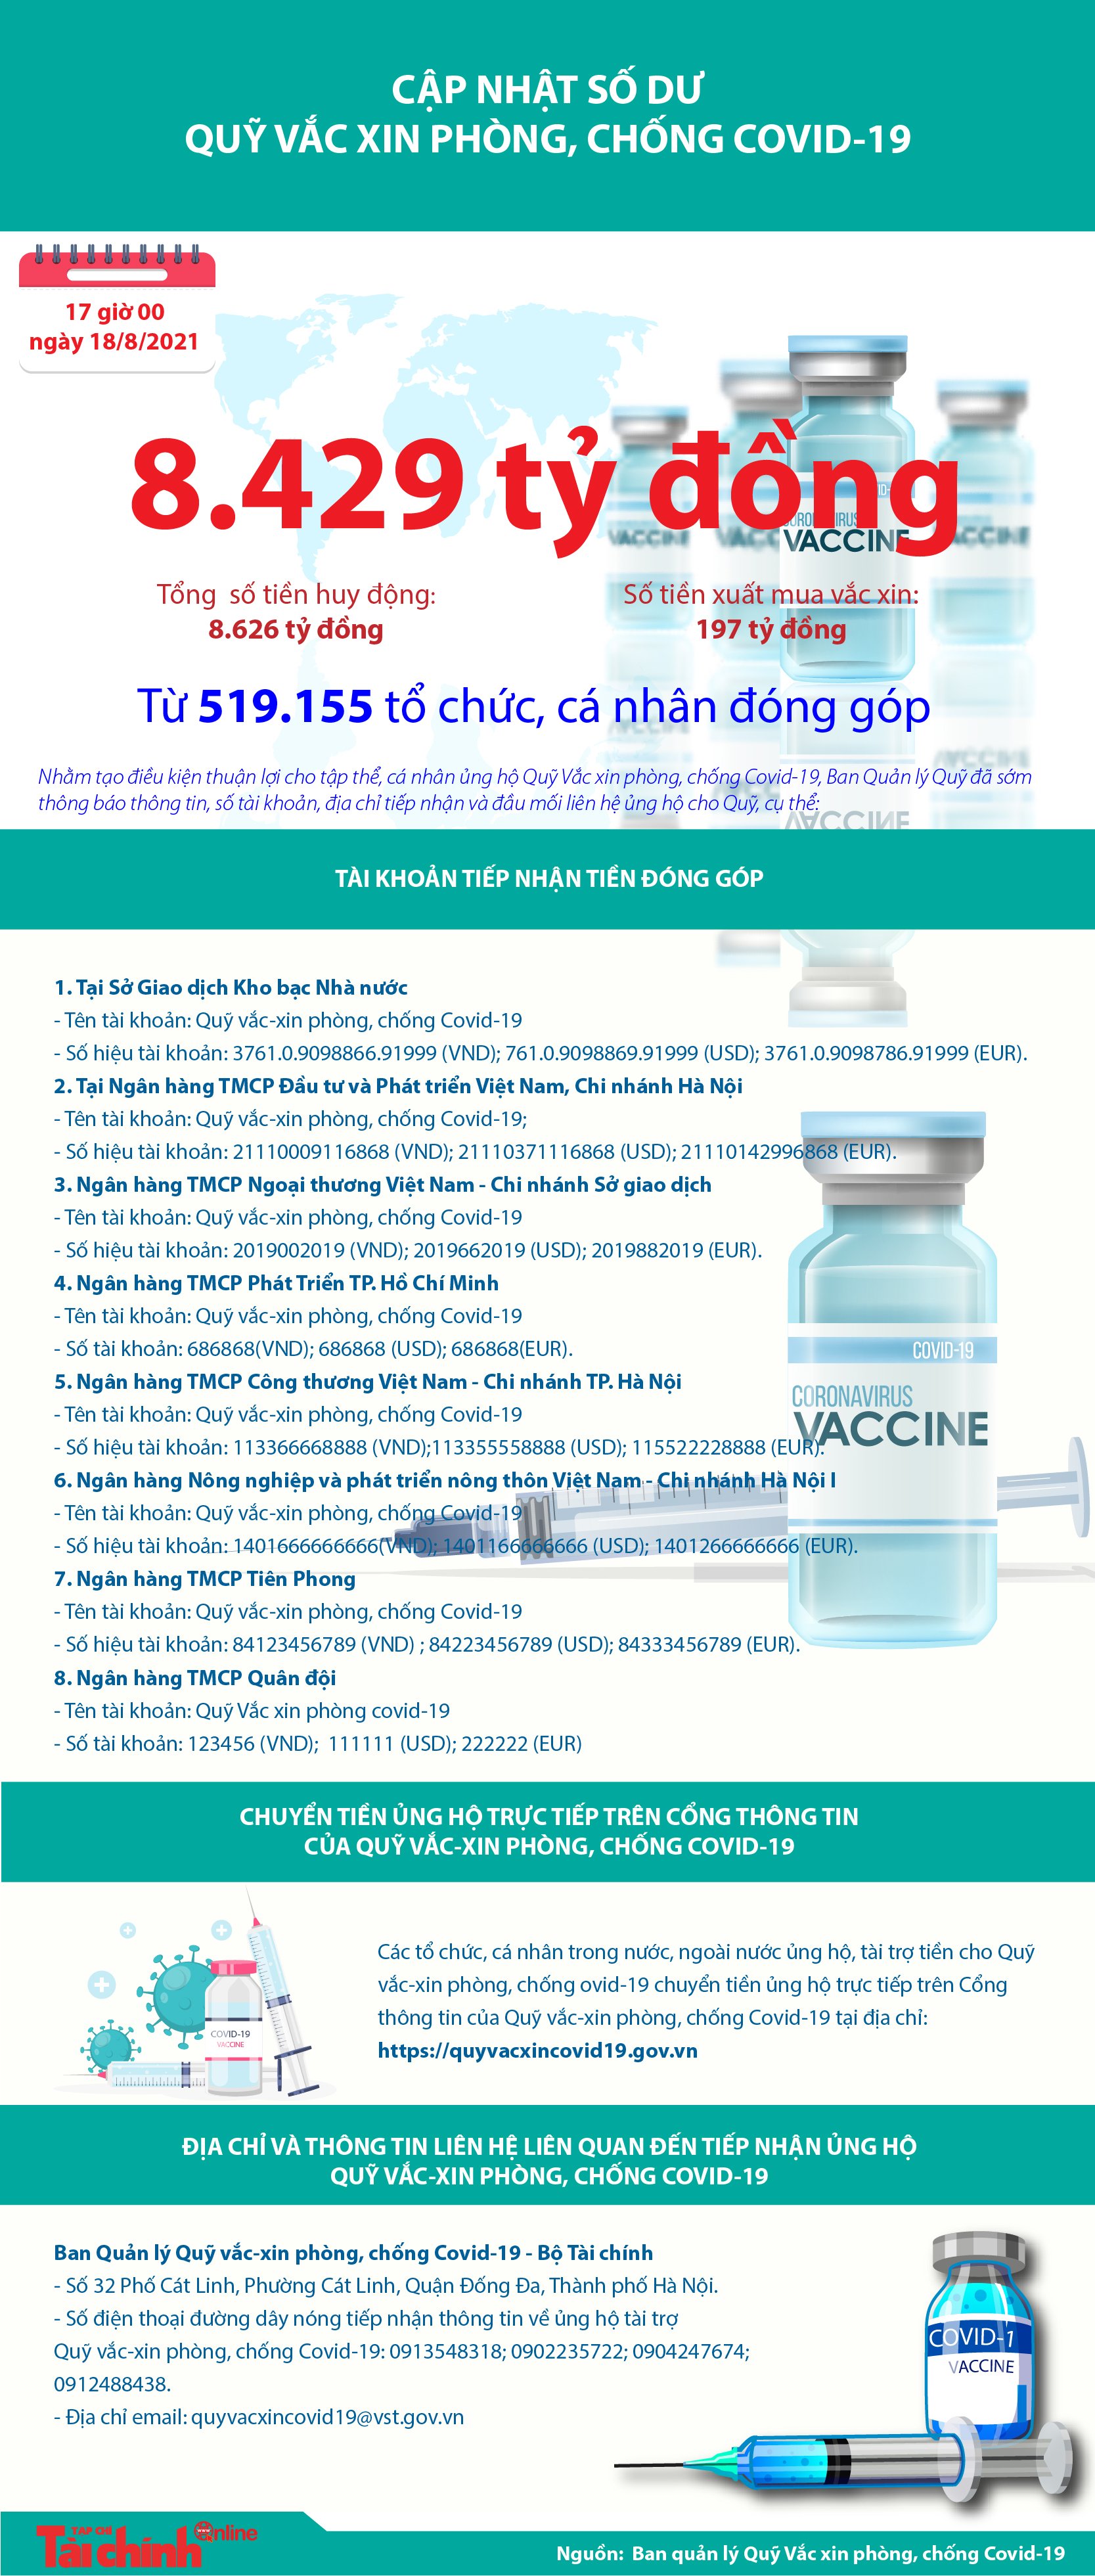 [Infographics] Quỹ Vắc xin phòng, chống COVID-19 còn dư 8.429 tỷ đồng - Ảnh 1